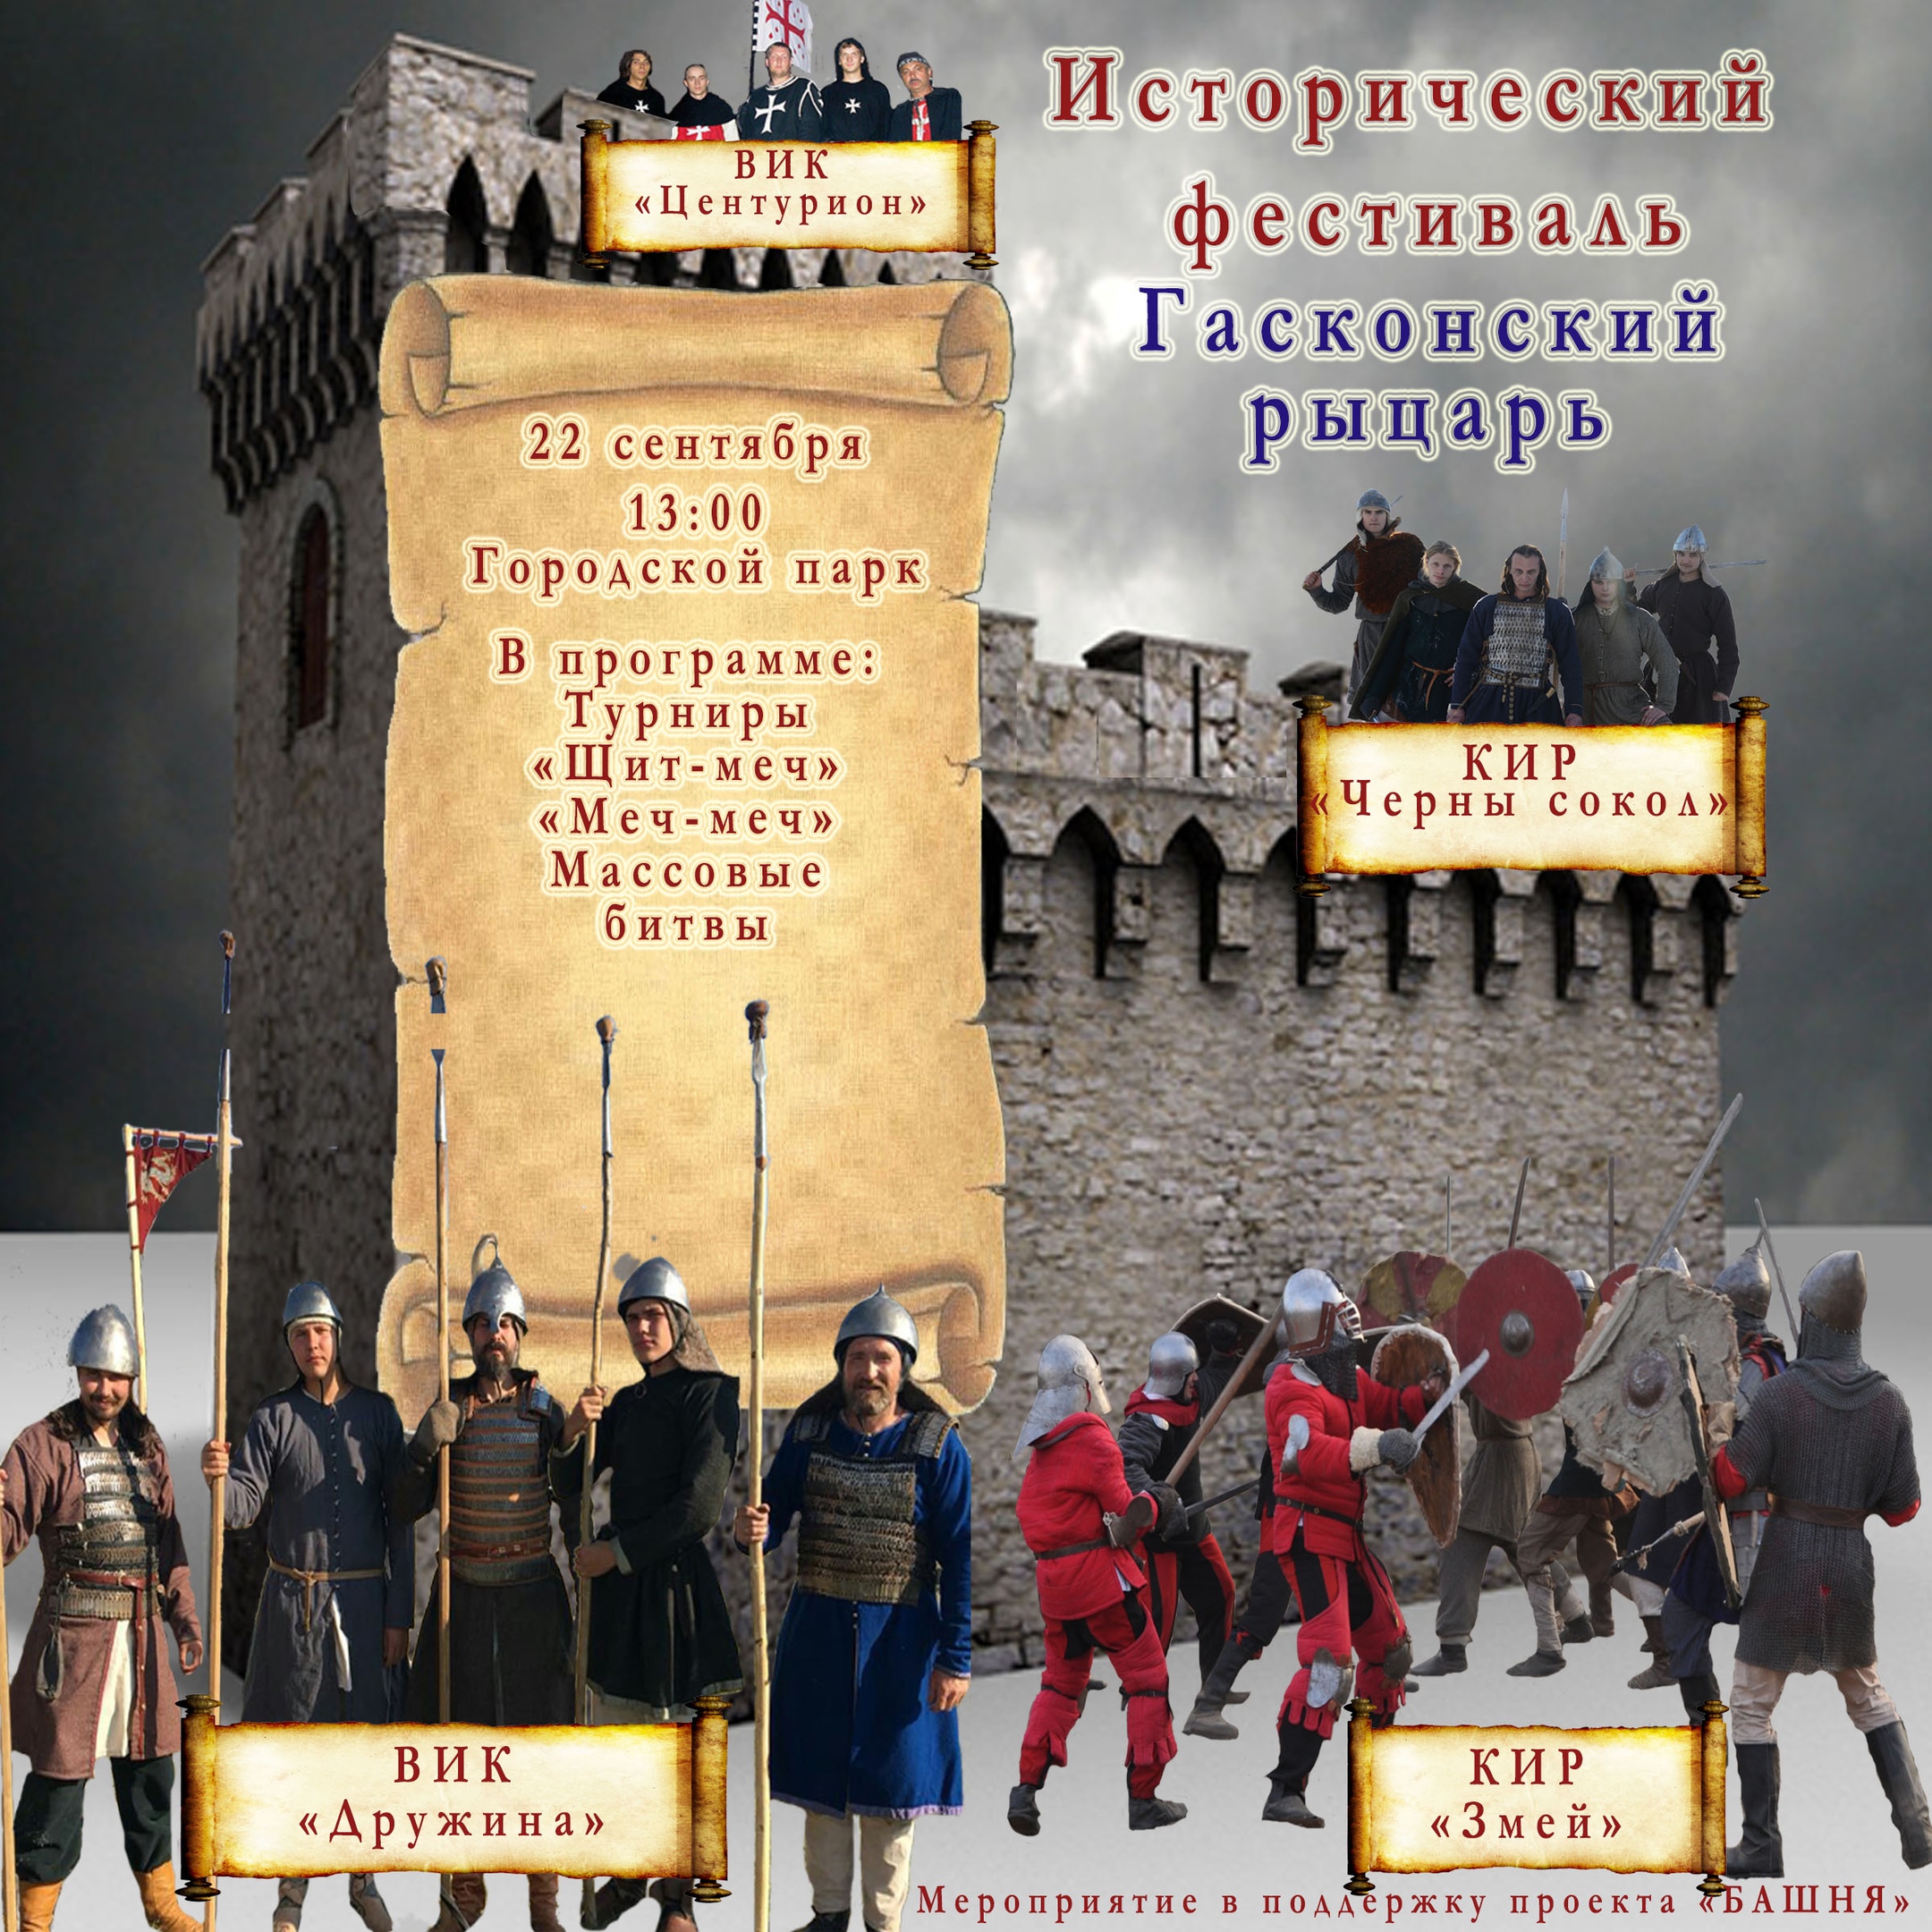 Исторический фестиваль "Гасконский рыцарь" в Новтроицке!